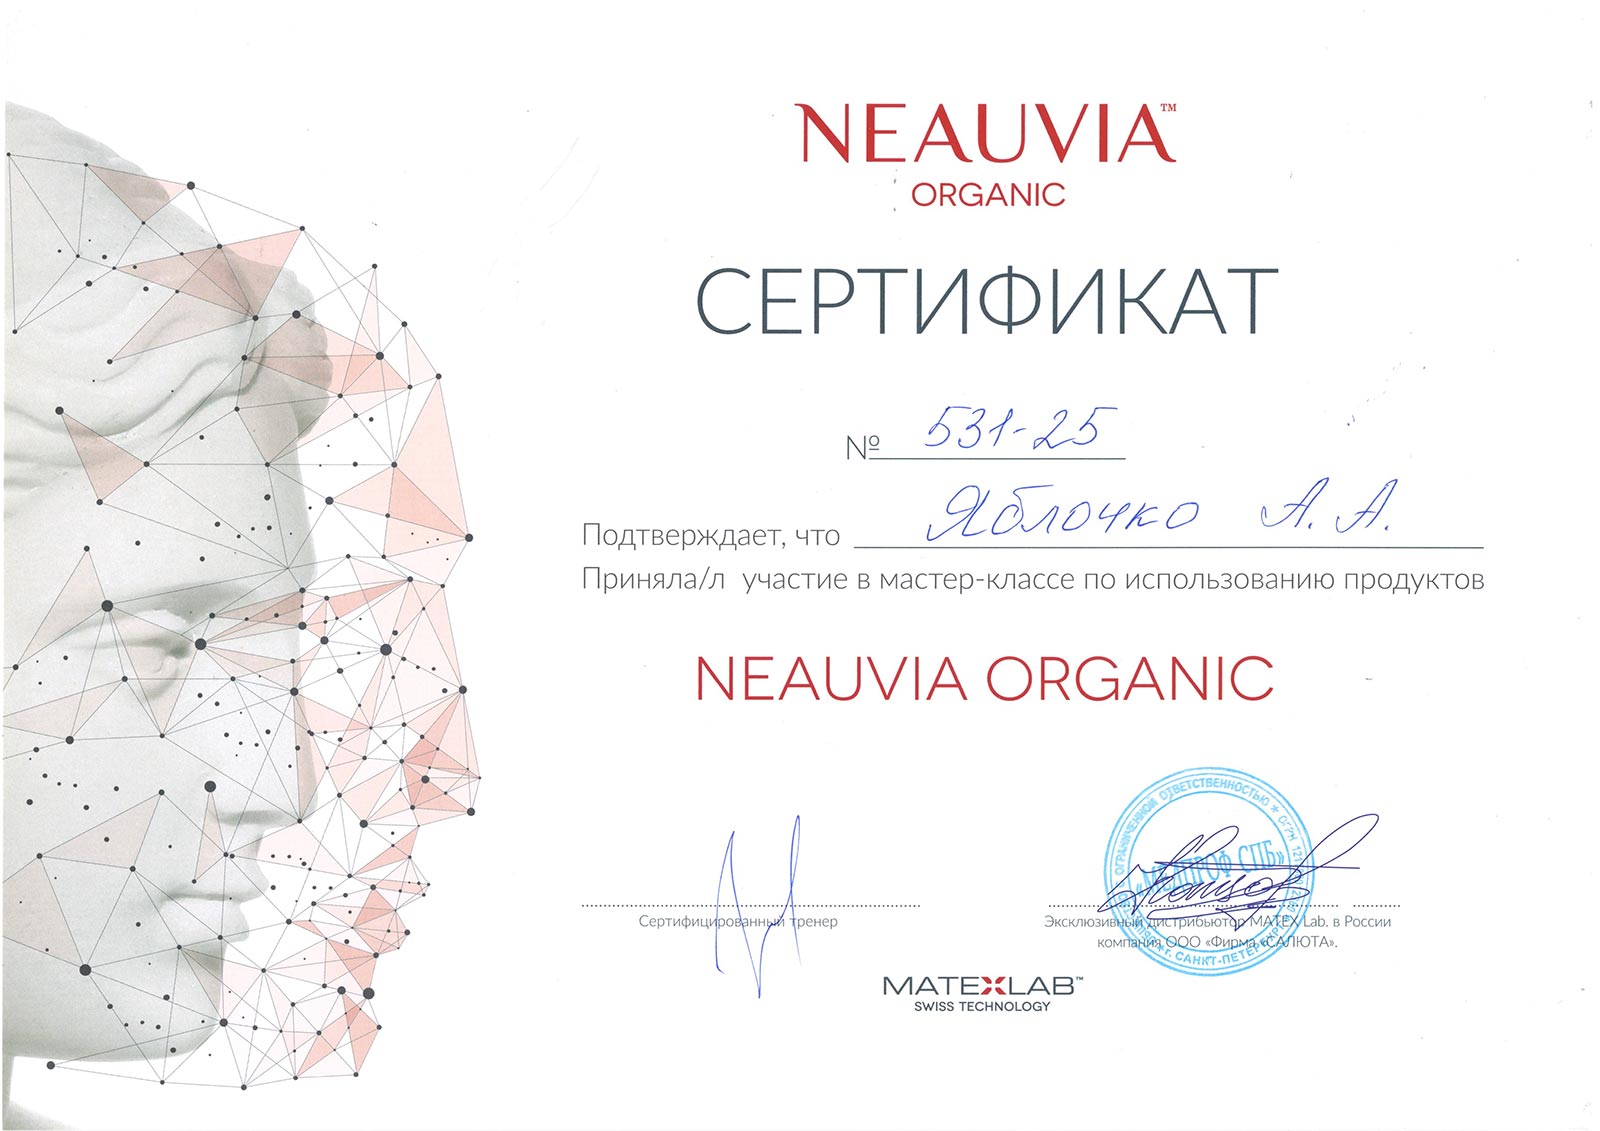 Сертификат — Мастер-класс по использованию продуктов Neauvia Organic. Яблочко Анастасия Андреевна